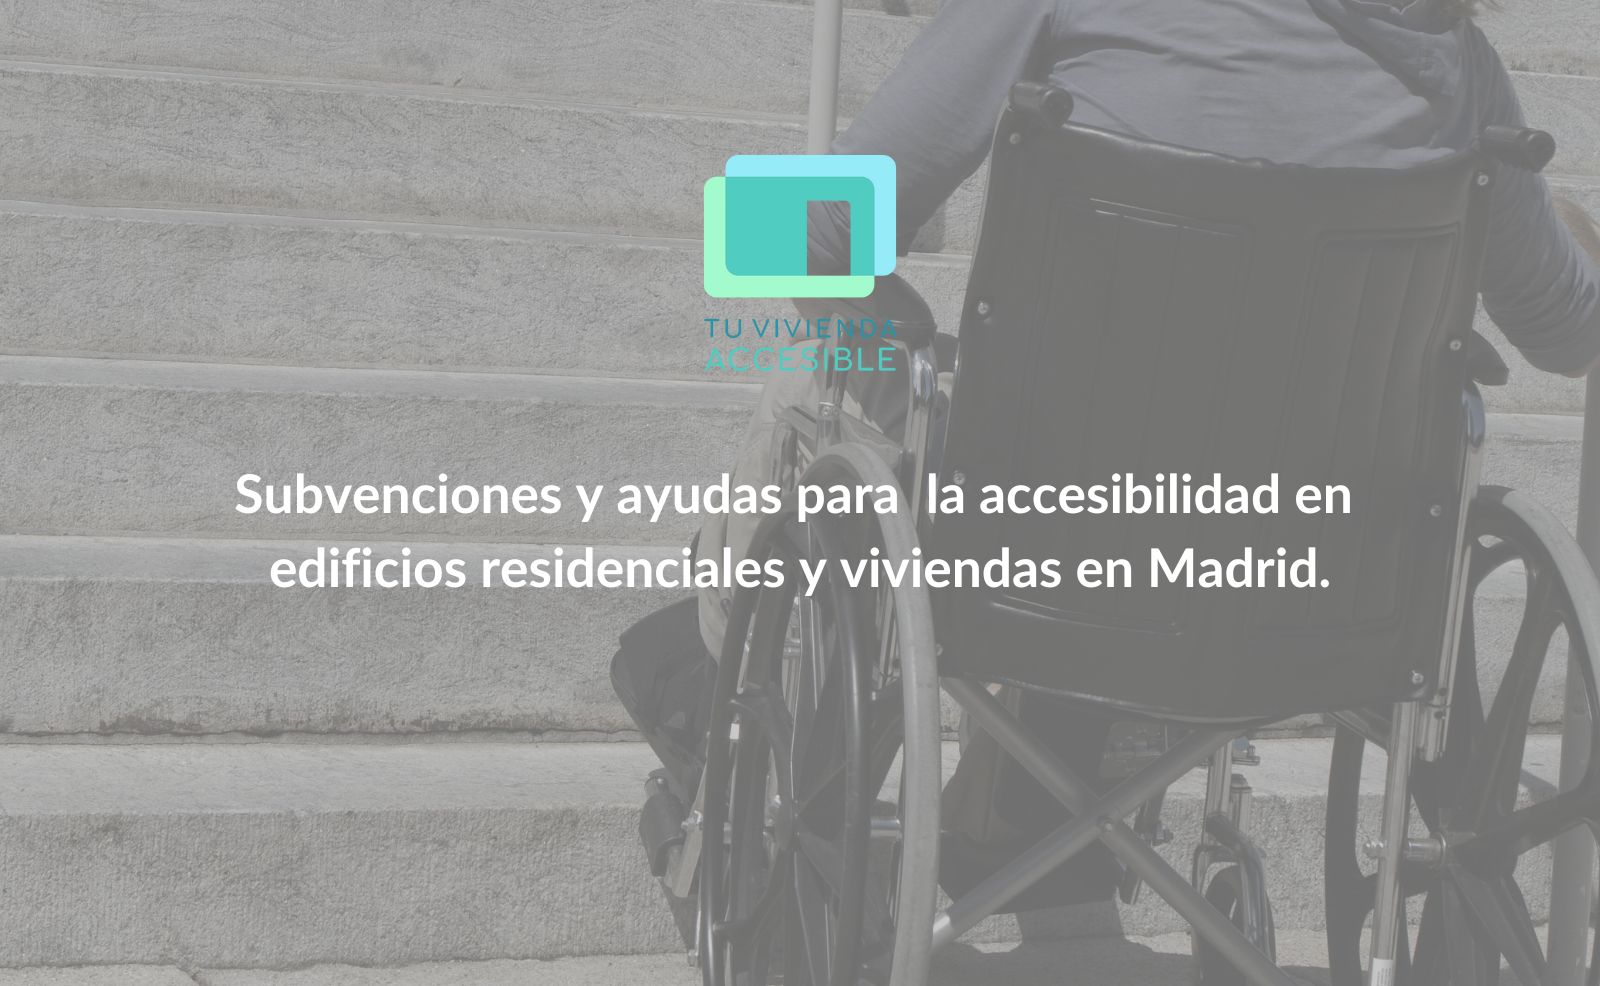 Subvenciones y ayudas para la accesibilidad en edificios residenciales y viviendas en Madrid